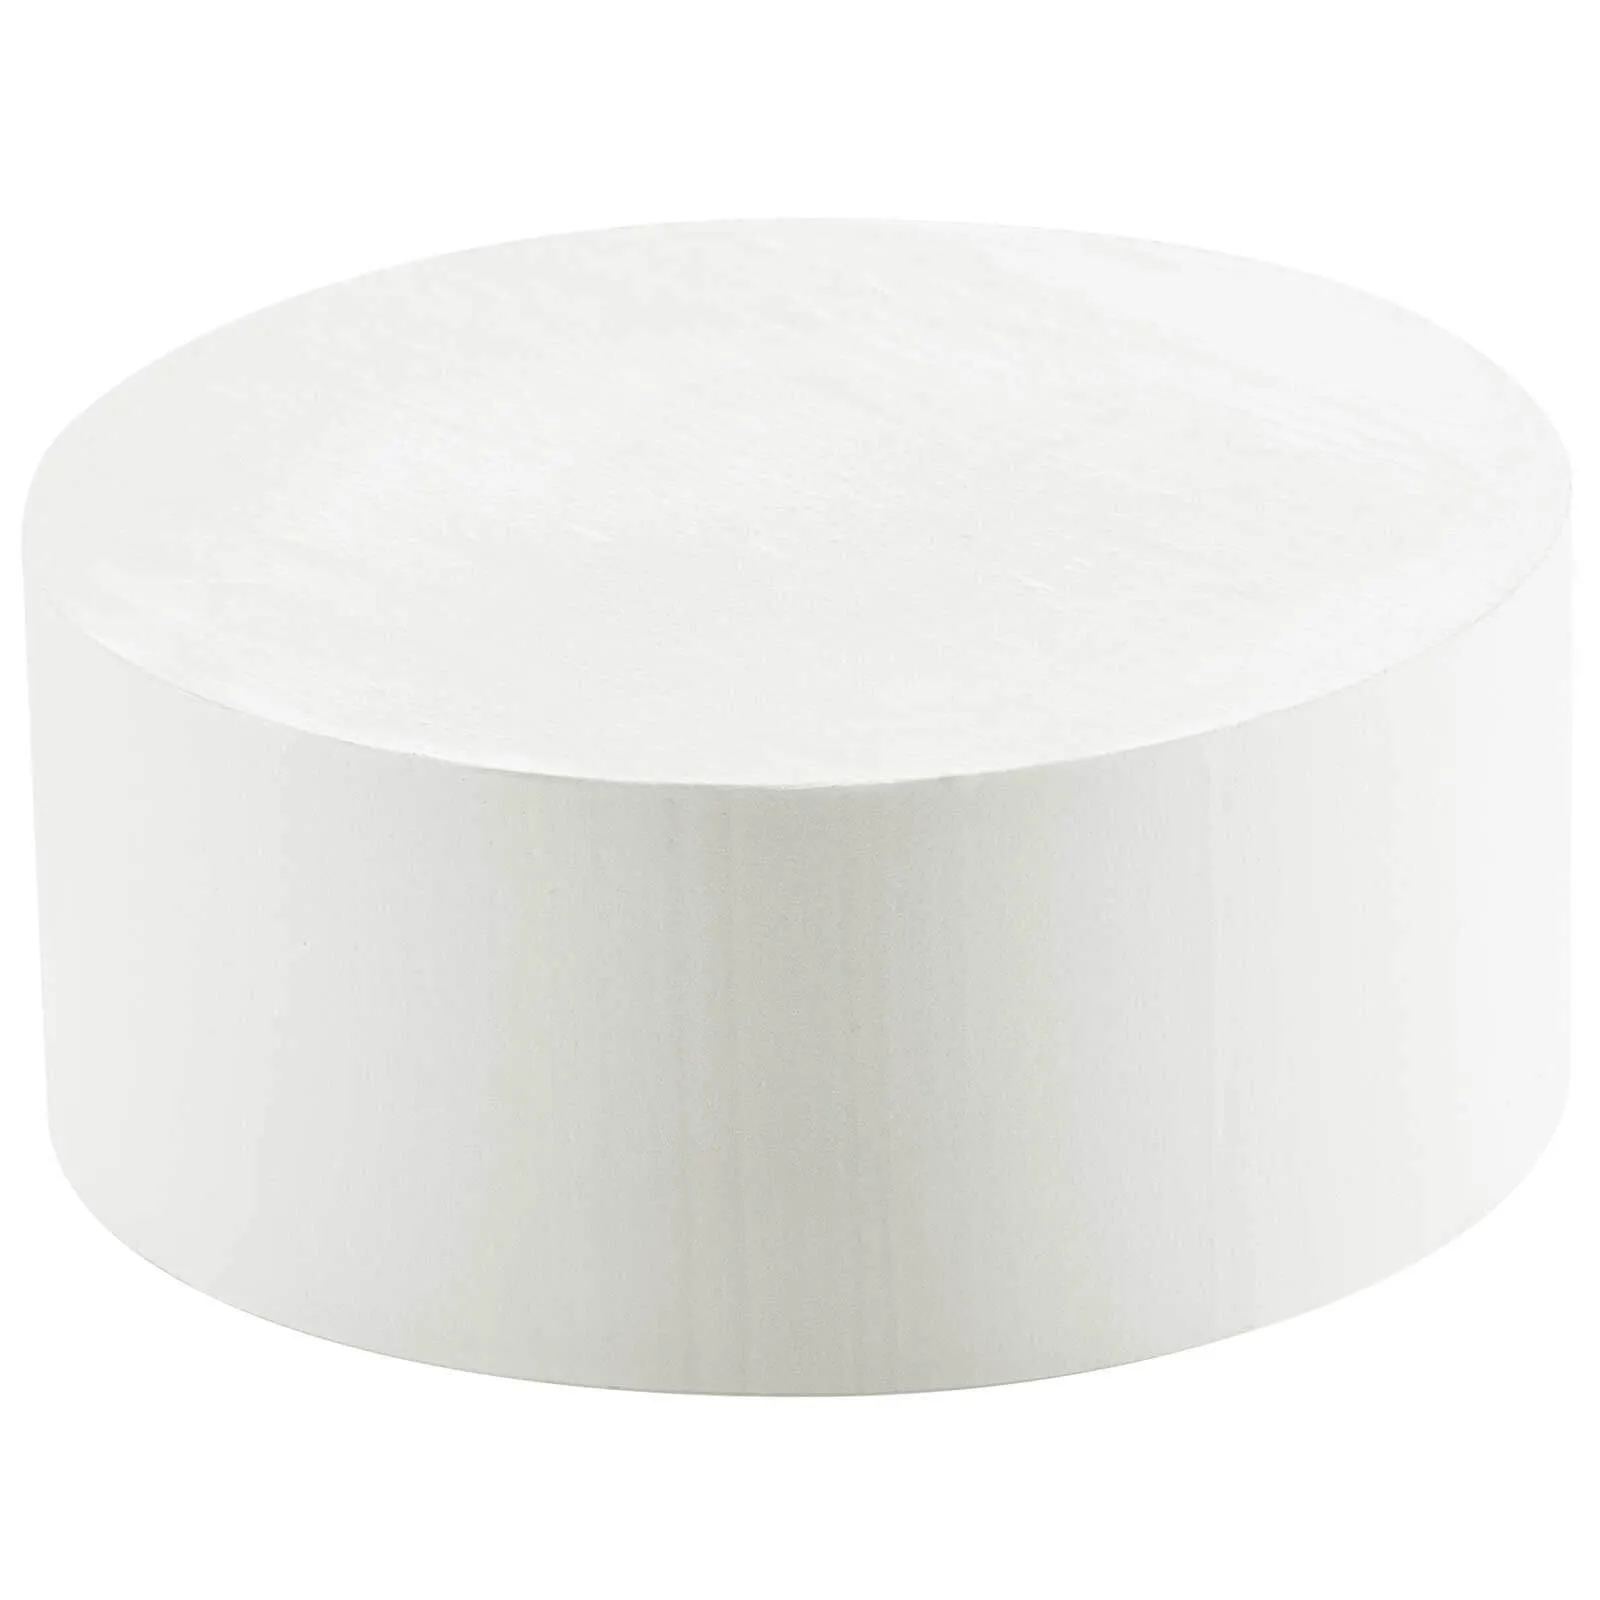 Festool EVA Adhesive for KA 65 Edge Bander - White, Pack of 48